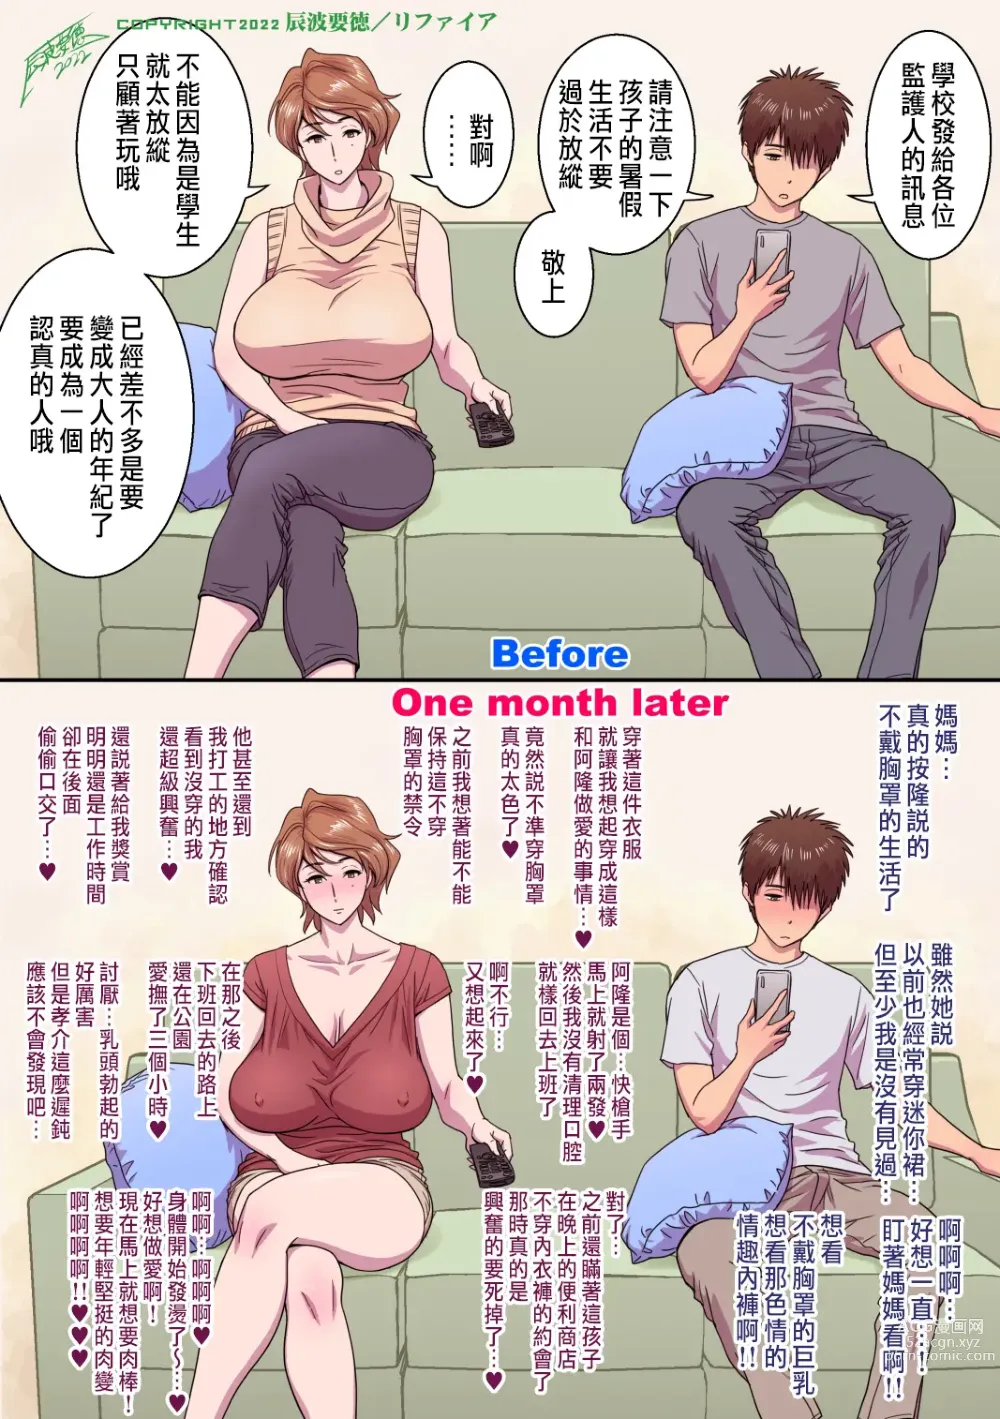 Page 107 of manga 母が友カノになったので